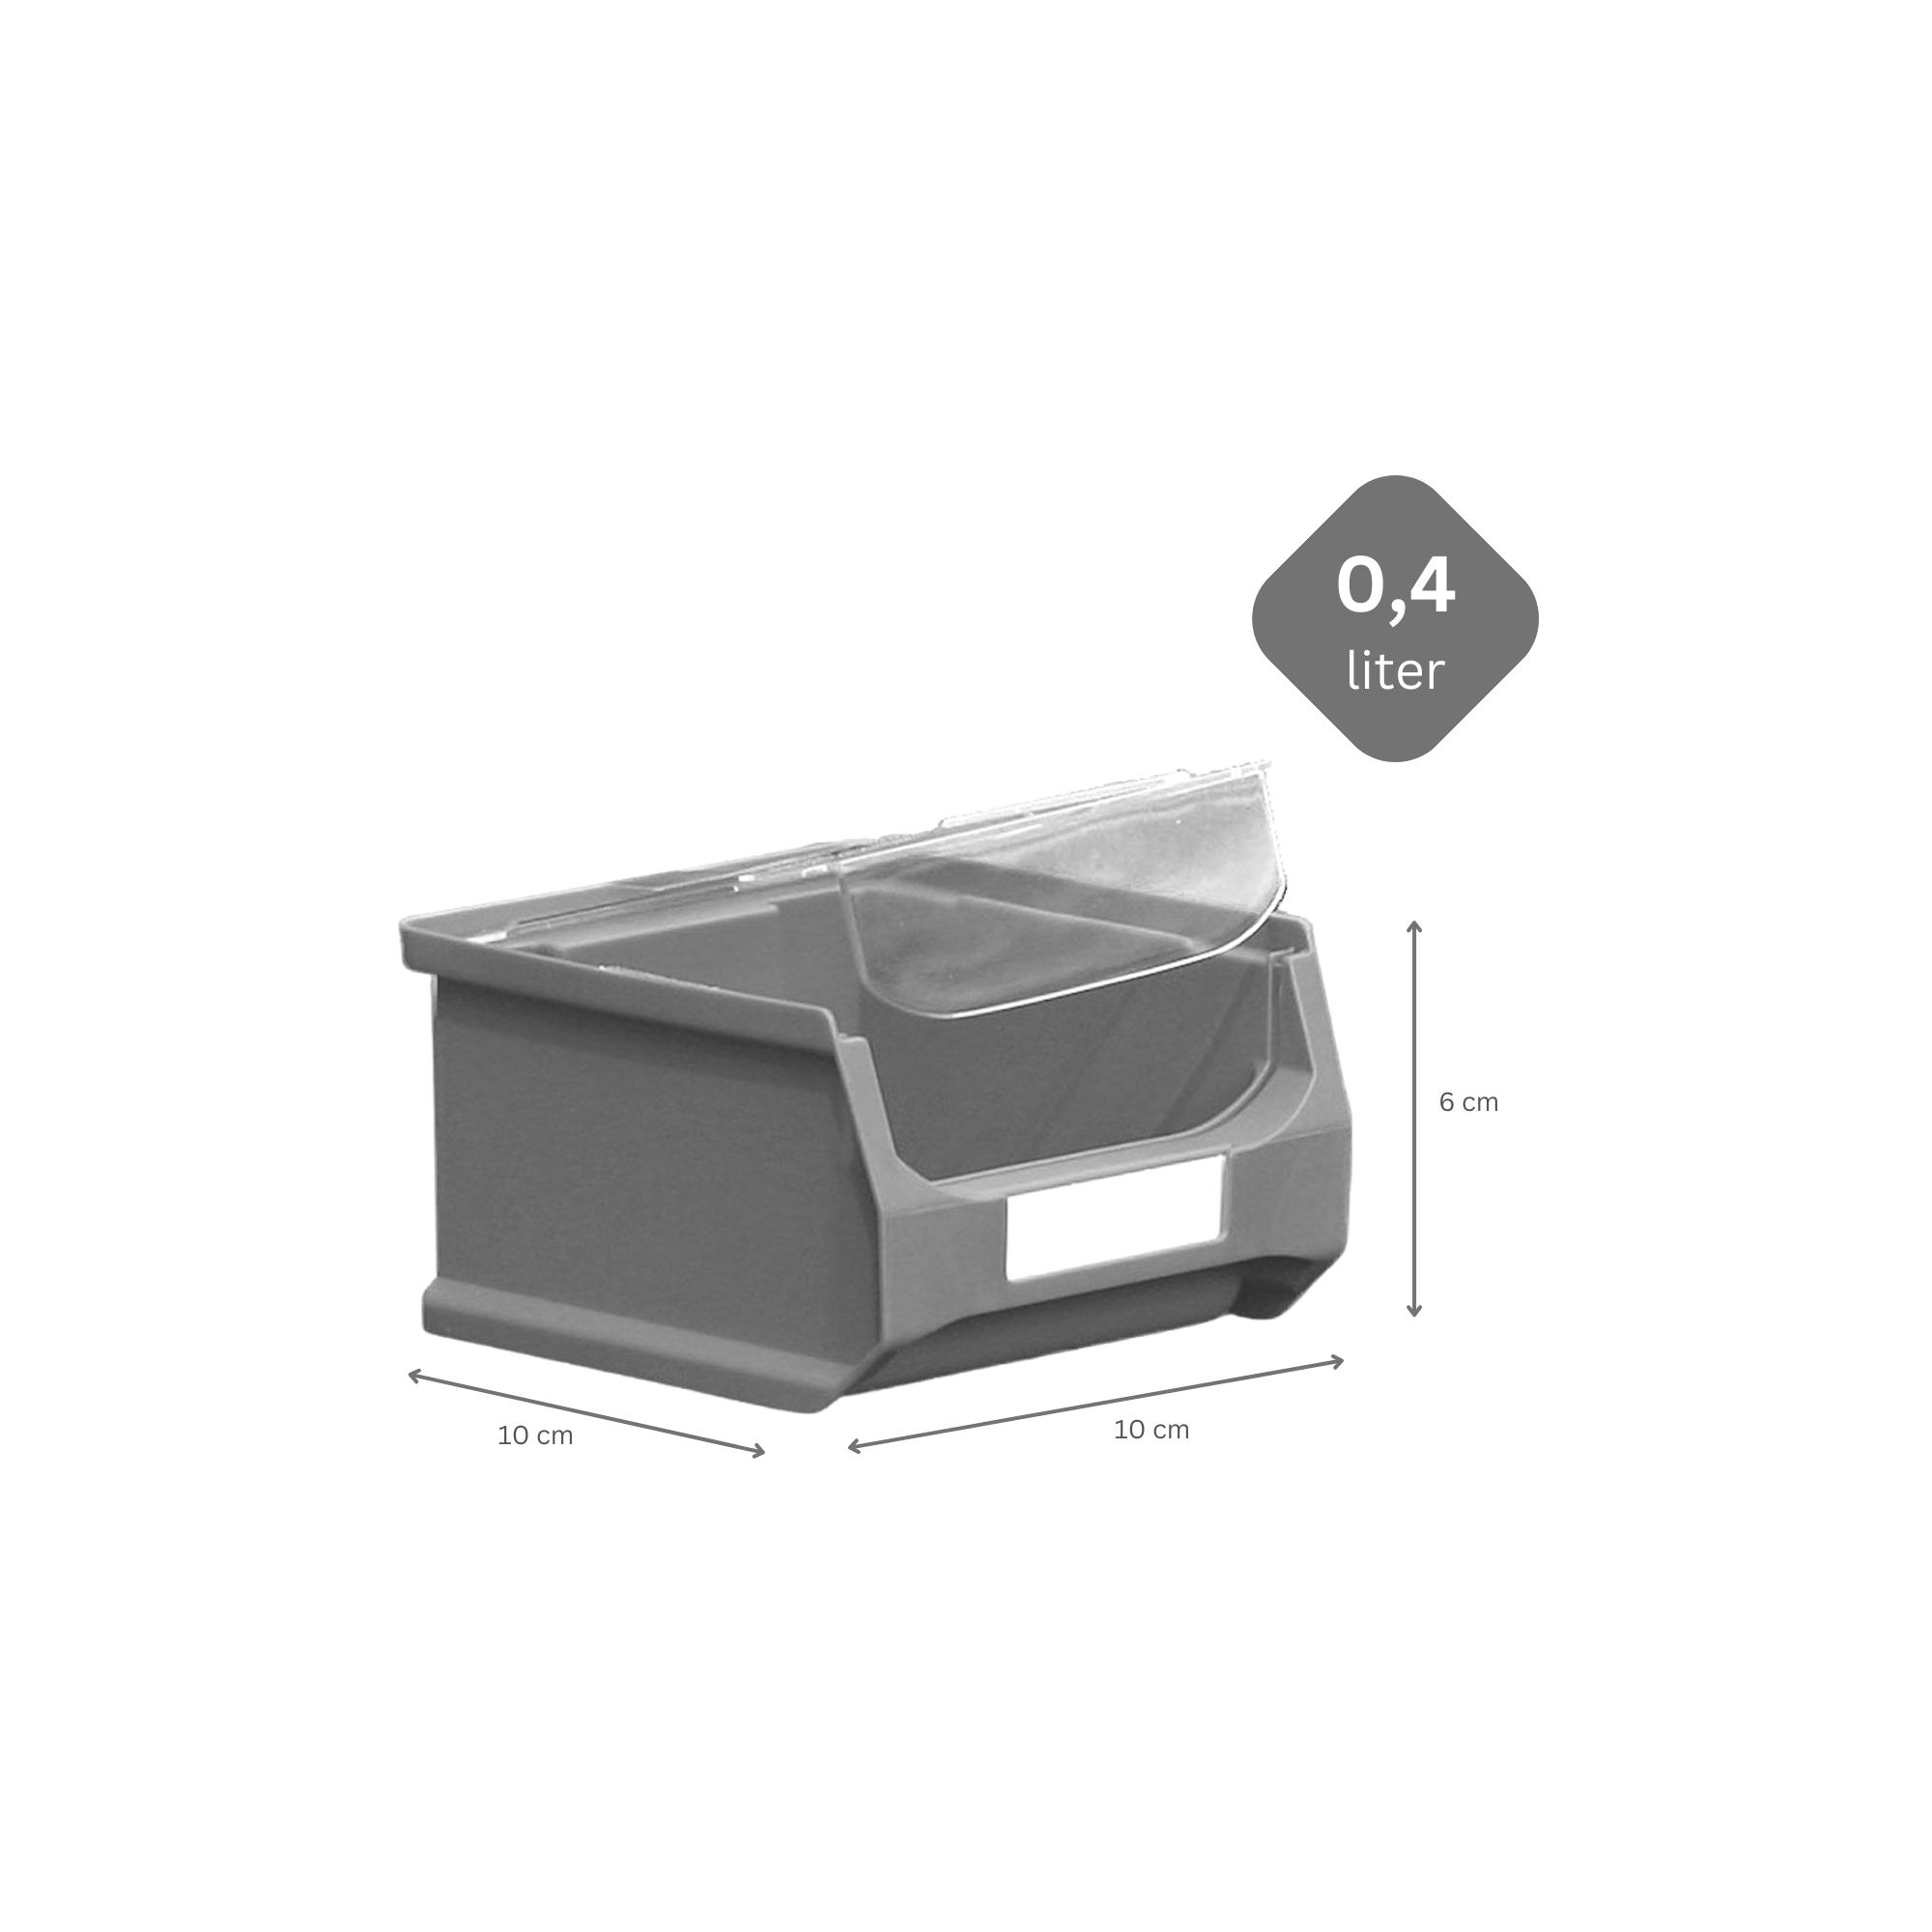 SuperSparSet 48x Gelbe Sichtlagerbox 1.0 mit Abdeckung | HxBxT 6x10x10cm | 0,4 Liter | Sichtlagerbehälter, Sichtlagerkasten, Sichtlagerkastensortiment, Sortierbehälter